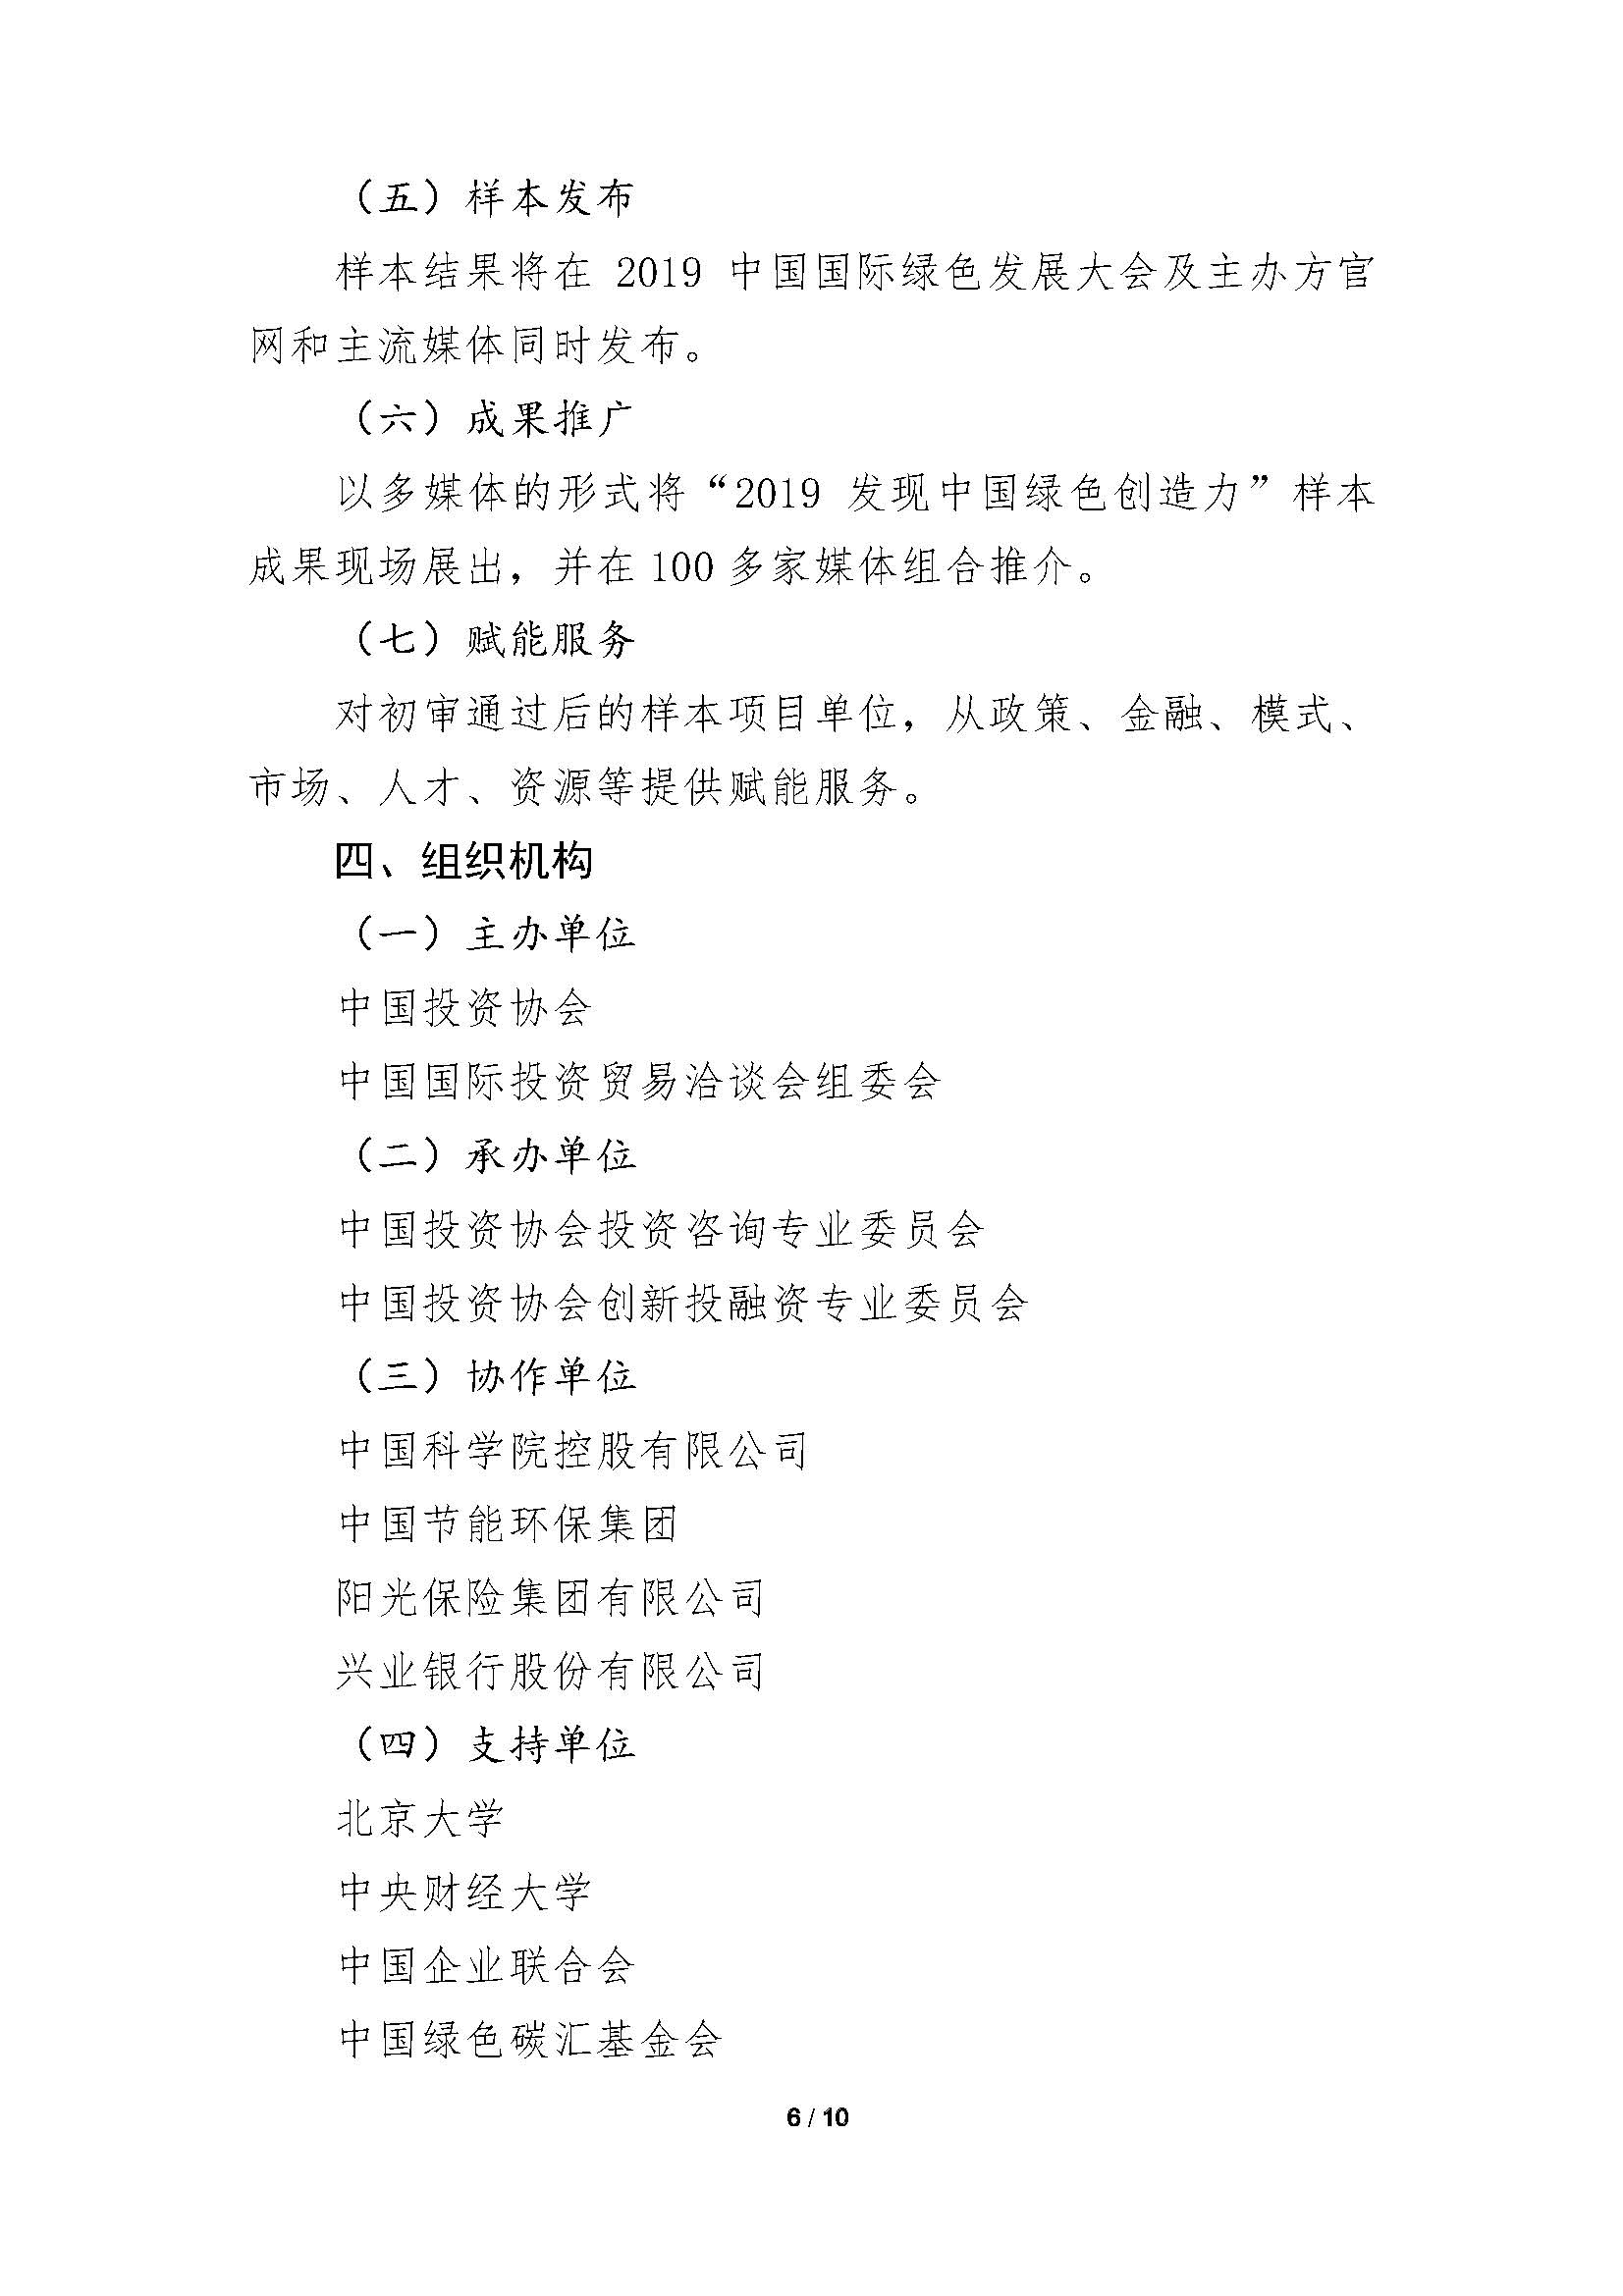 中国绿色创造力样本”的通知_页面_06.jpg